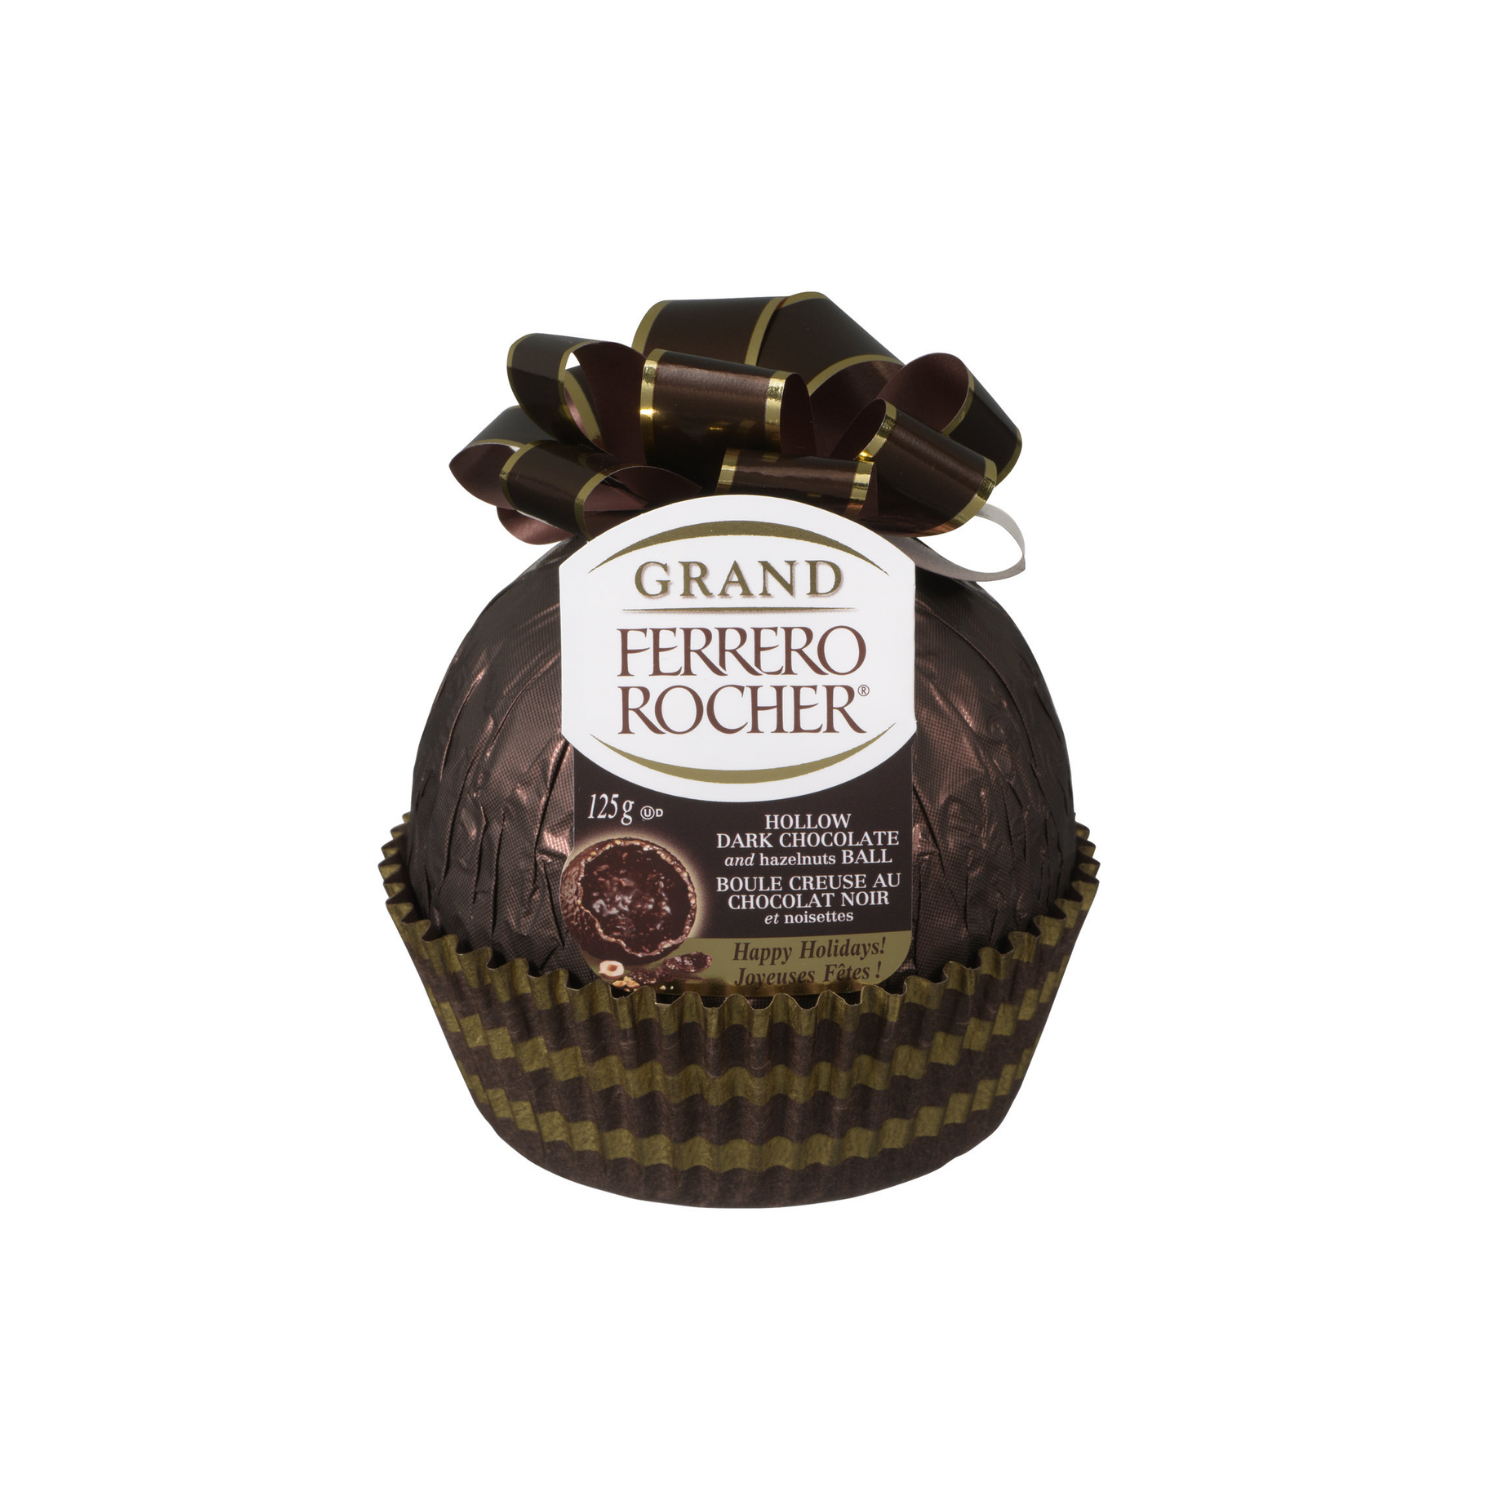 Grand Rocher boule creuse au chocolat noir et aux noisettes, 125 g